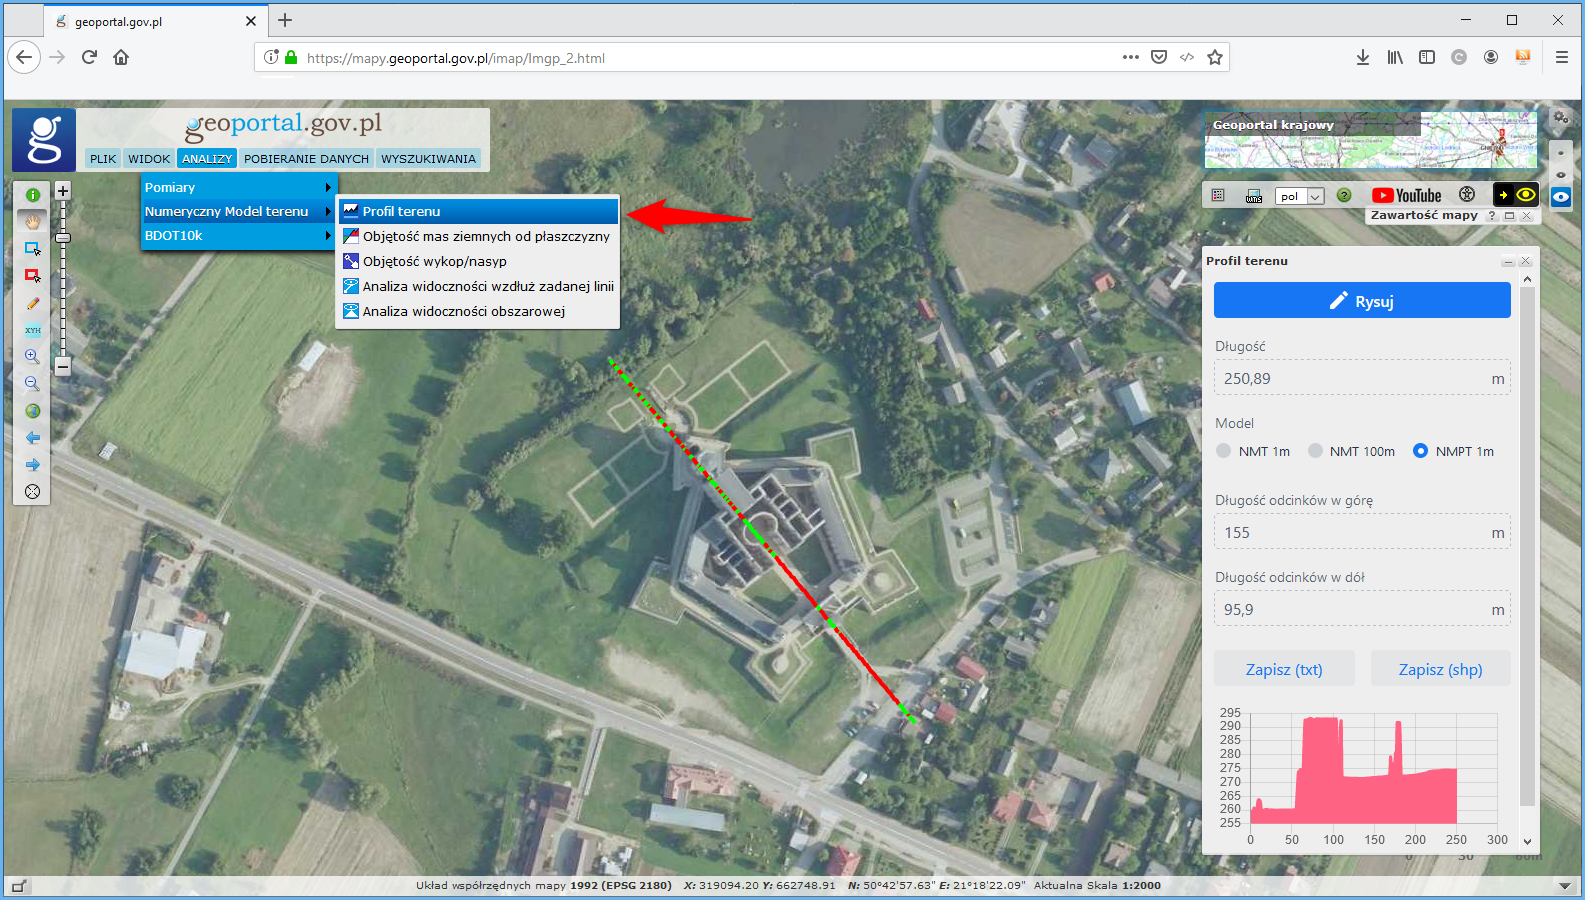 Ilustracja przedstawia zrzut ekranu z serwisu www.geoportal.gov.pl z zaznaczoną lokalzacją narzędzia "Profil terenu", w którym dodano nową funkcjonalność - możliwość generowania profilu terenu na bazie danych NMPT. Dla zobrazowania działania narzędzia została narysowana linia wzdłuż obiektu budowlanego oraz zaprezentowano wyniki analizy.